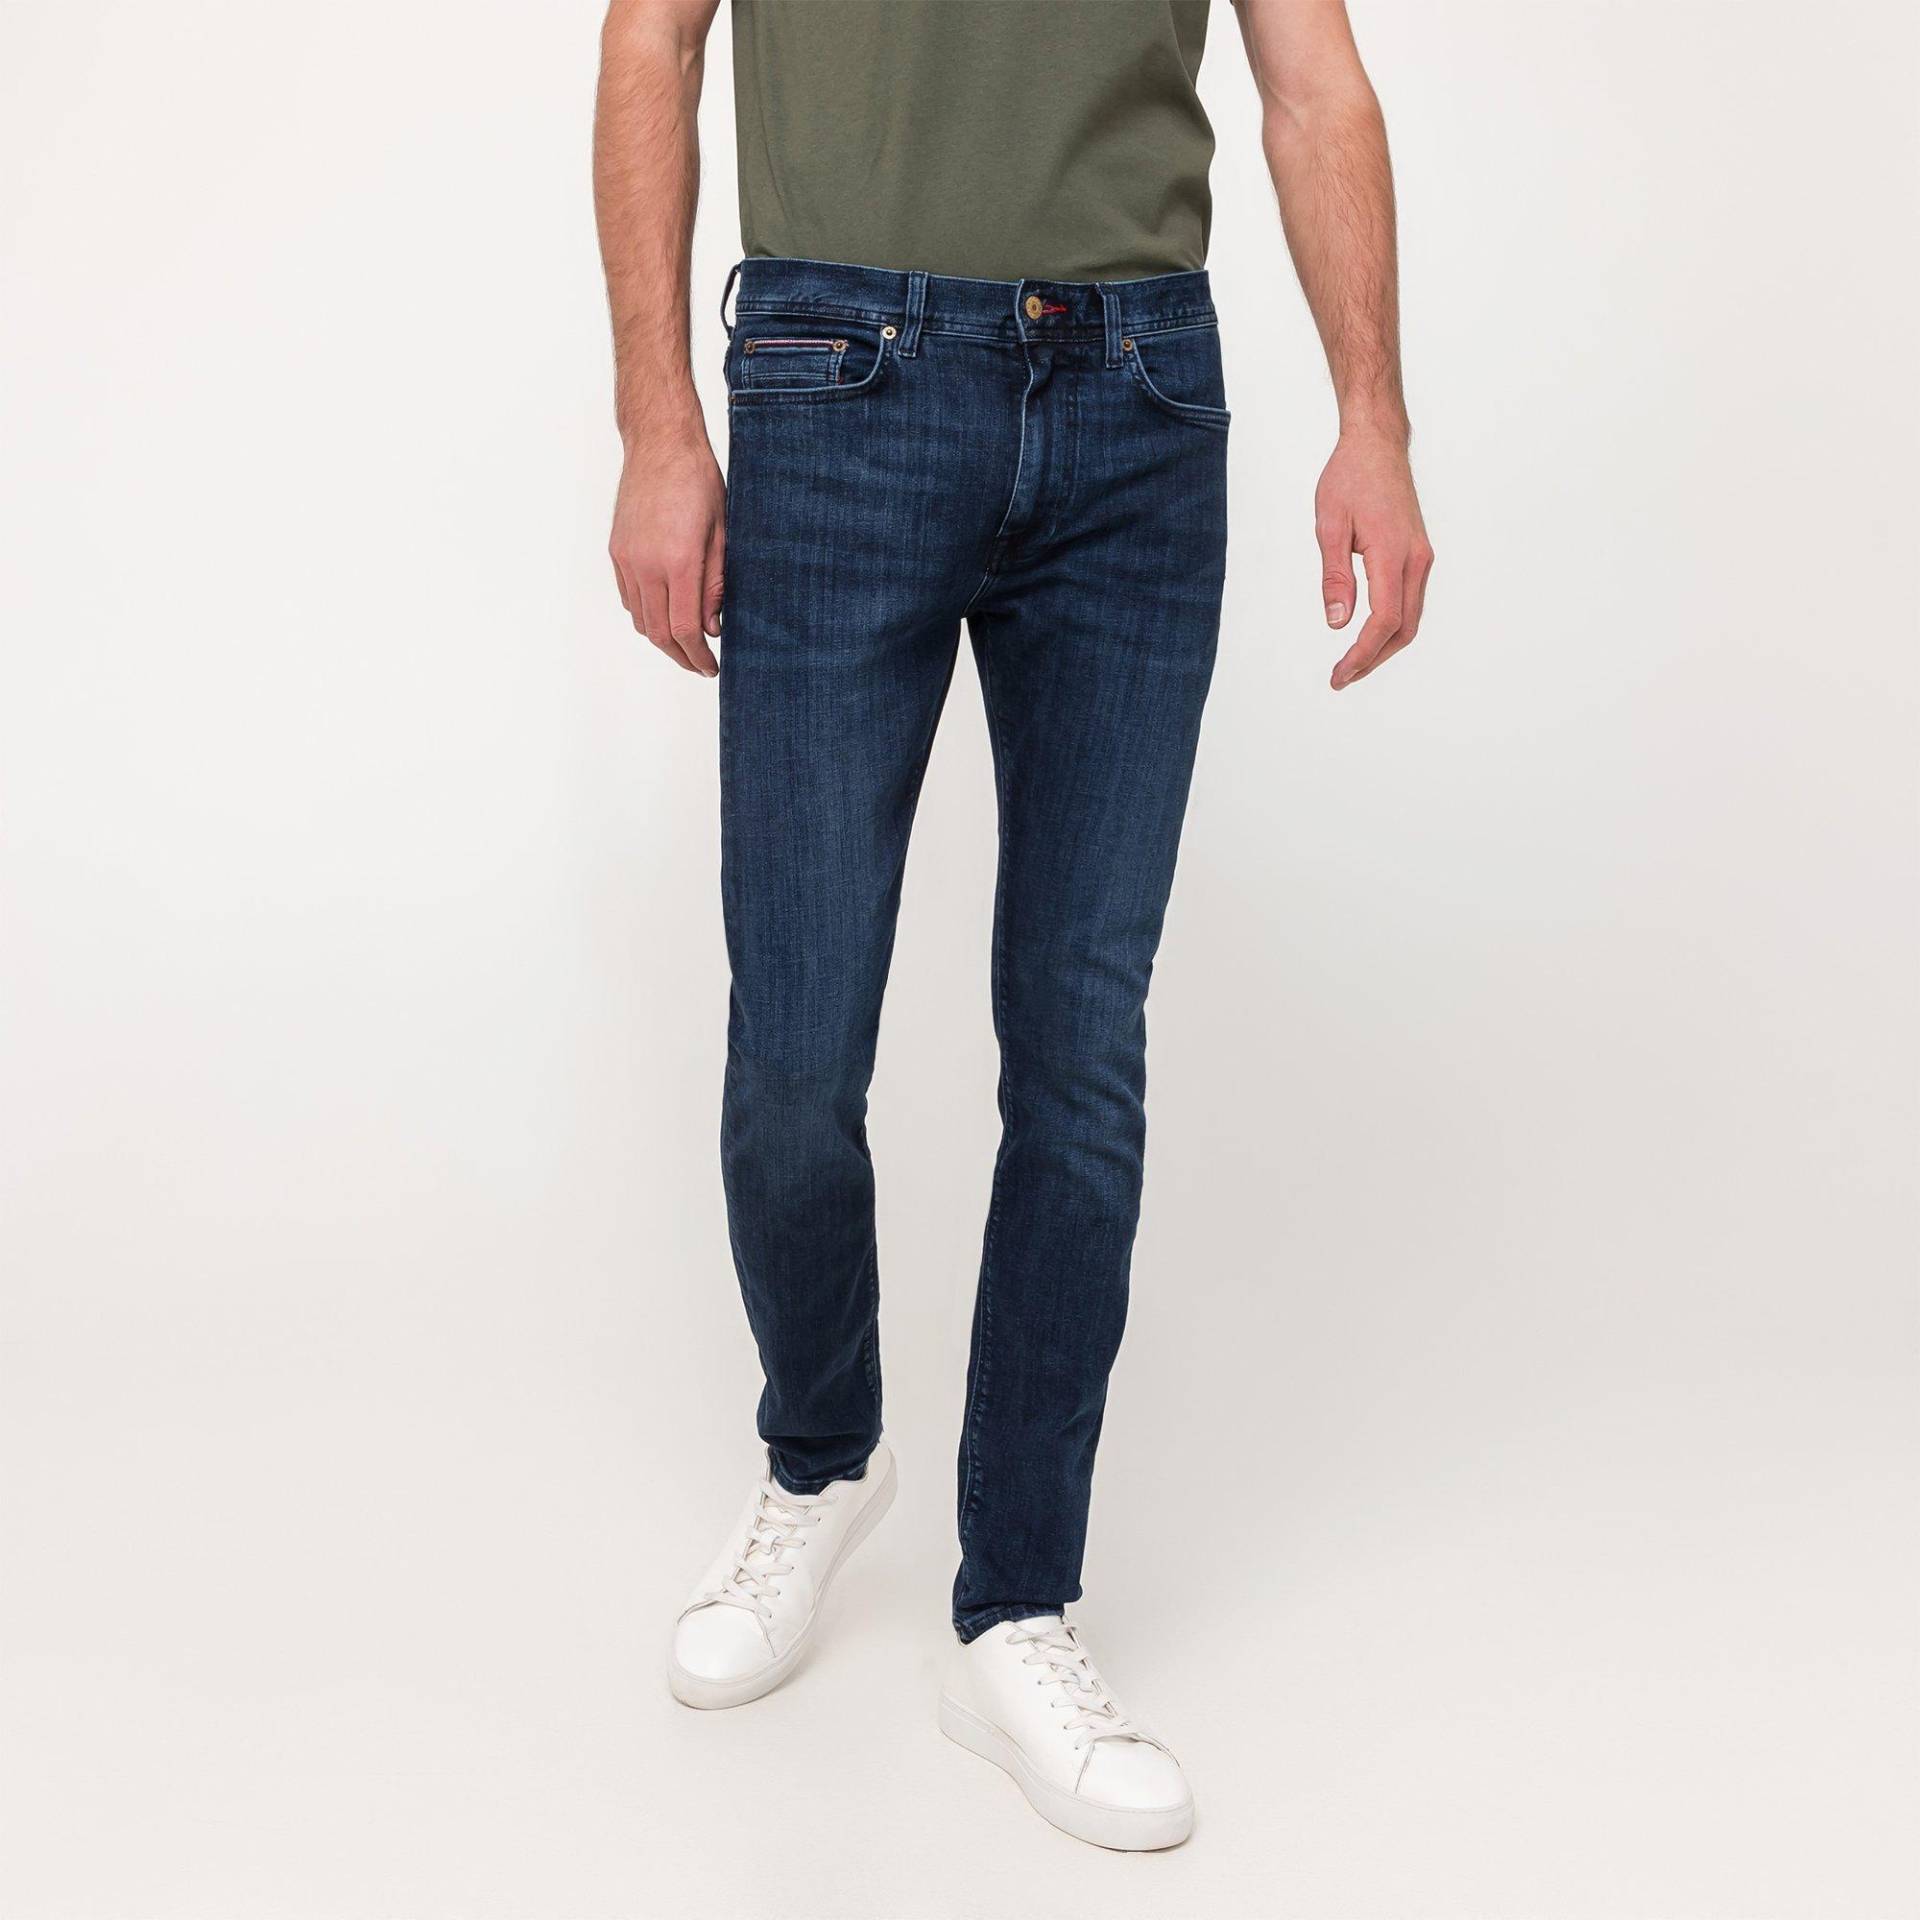 Jeans, Slim Fit Herren Indigo L30/W33 von TOMMY HILFIGER